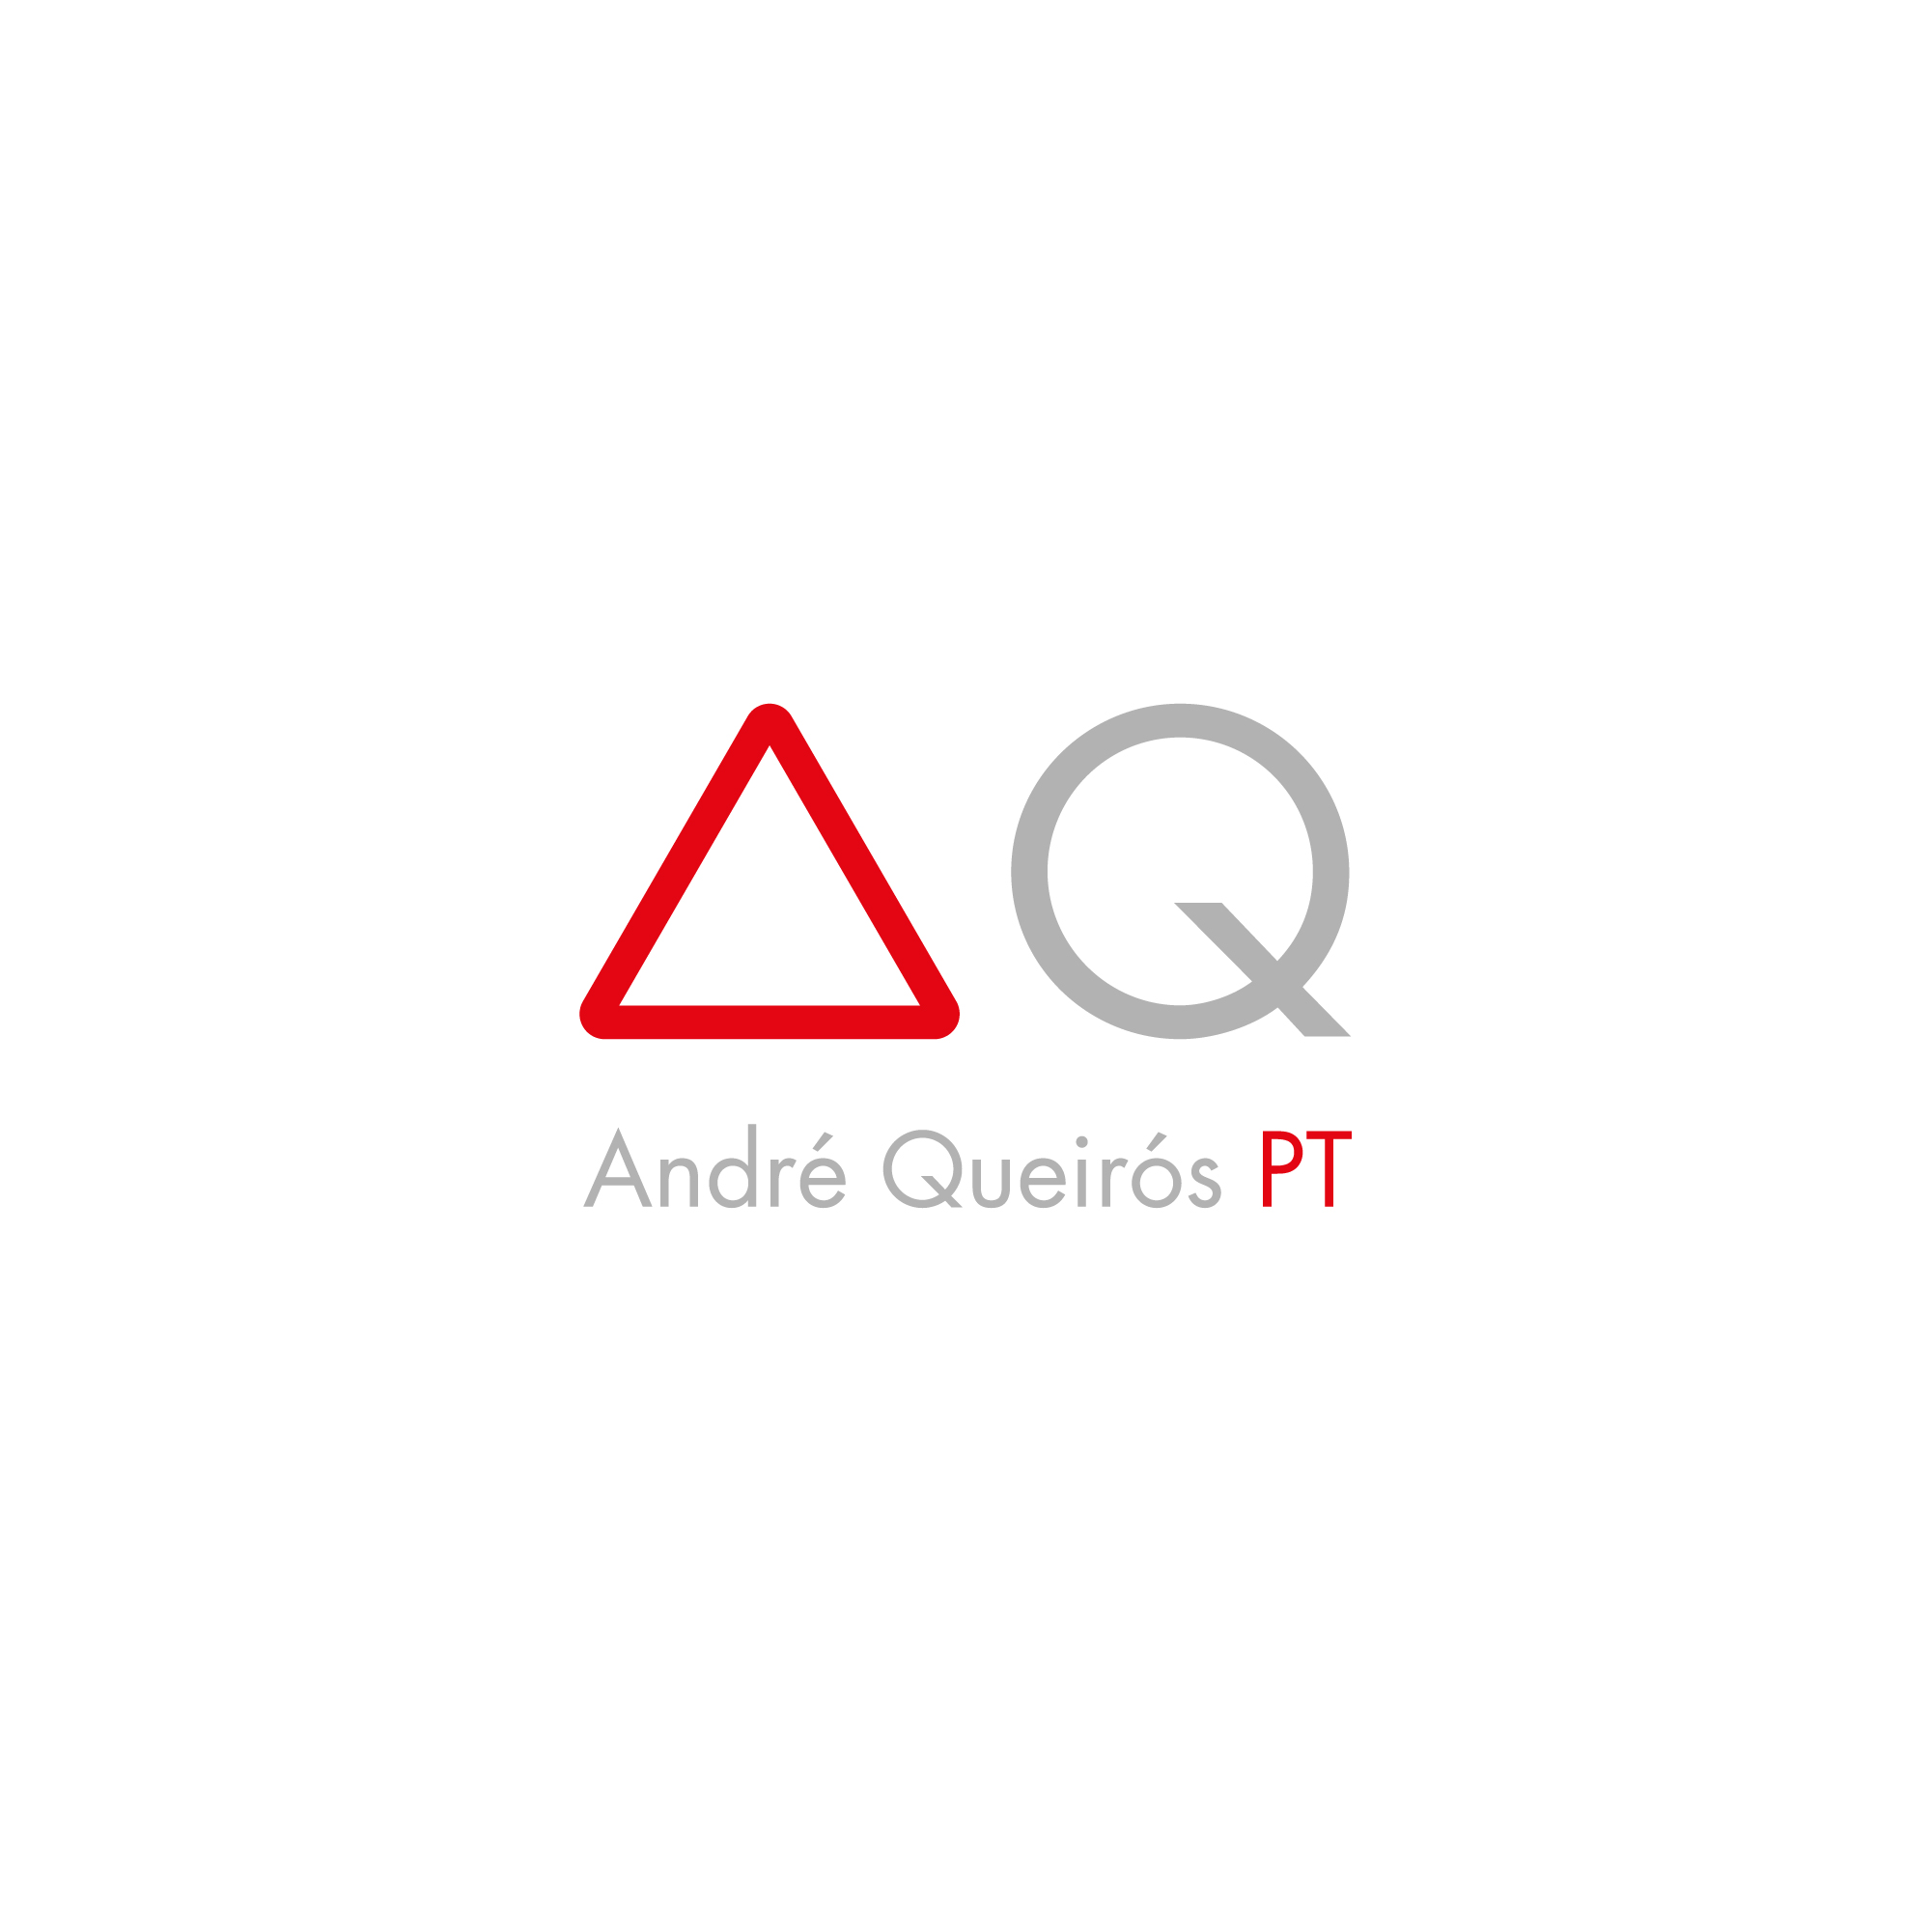 ANDRÉ QUEIRÓS - lettering (2018)